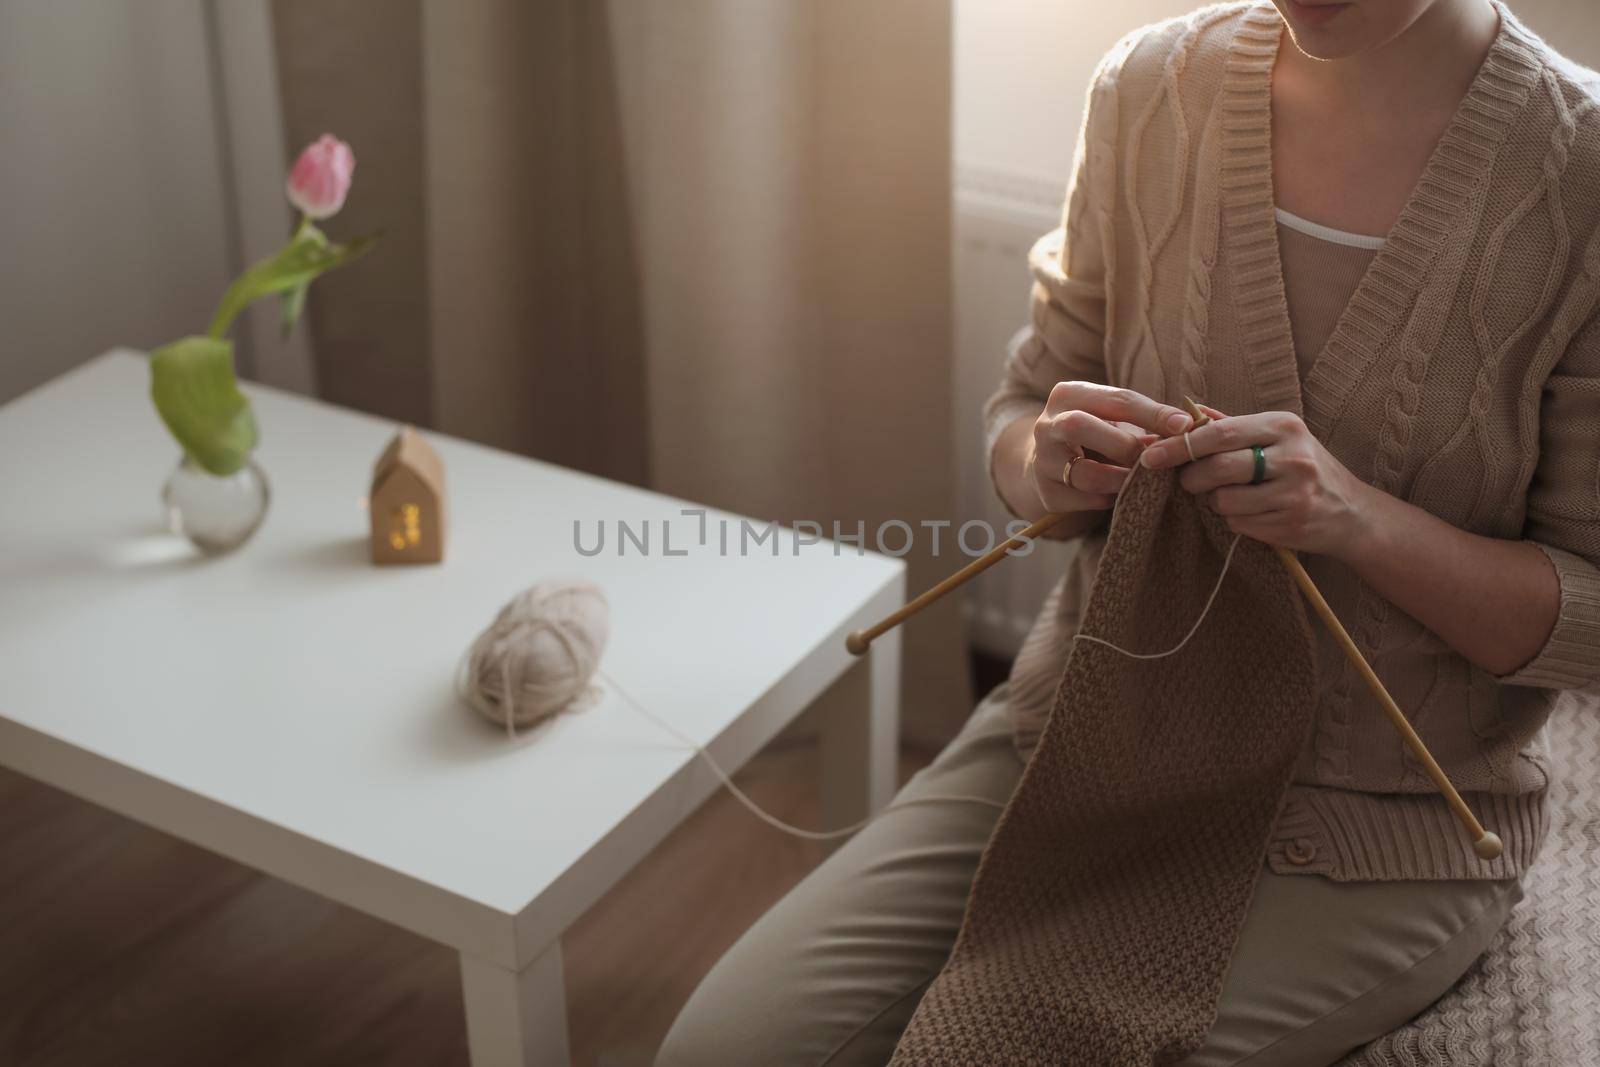 Women's hands knitting from woolen beige yarn